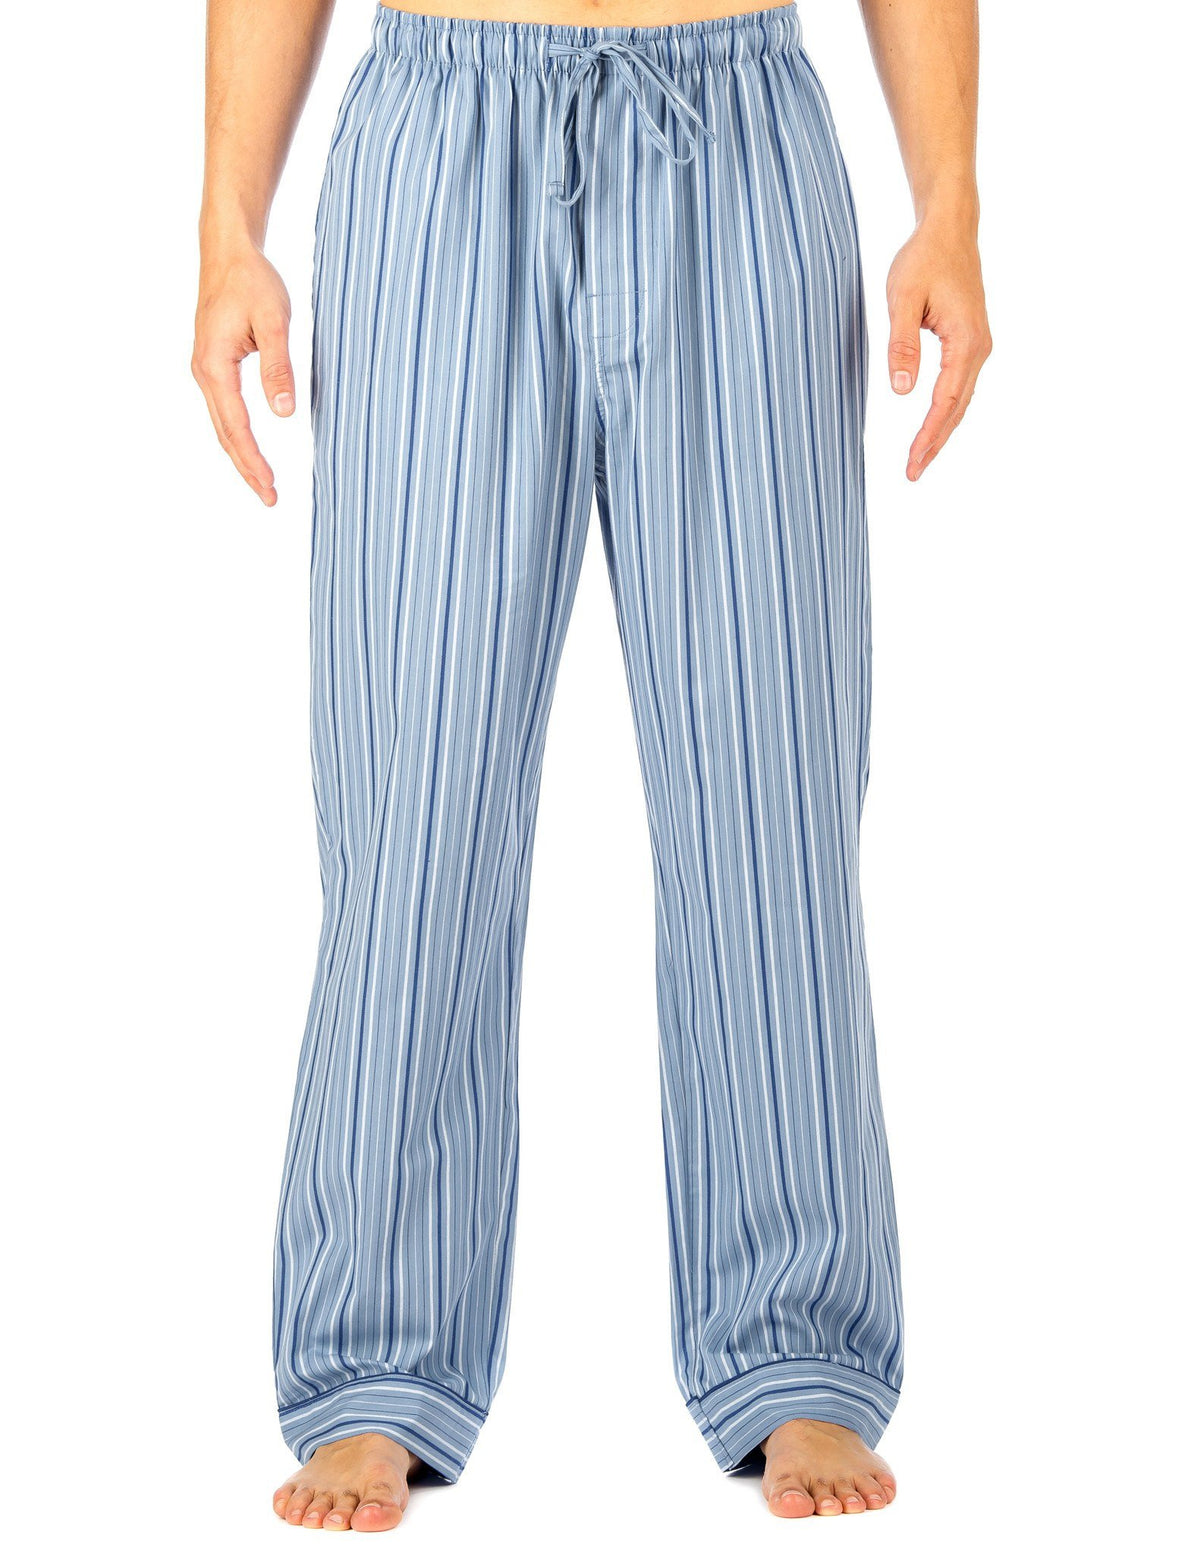 Men's 100% Cotton Comfort-Fit Sleep/Lounge Pants - Stripes Light Blue